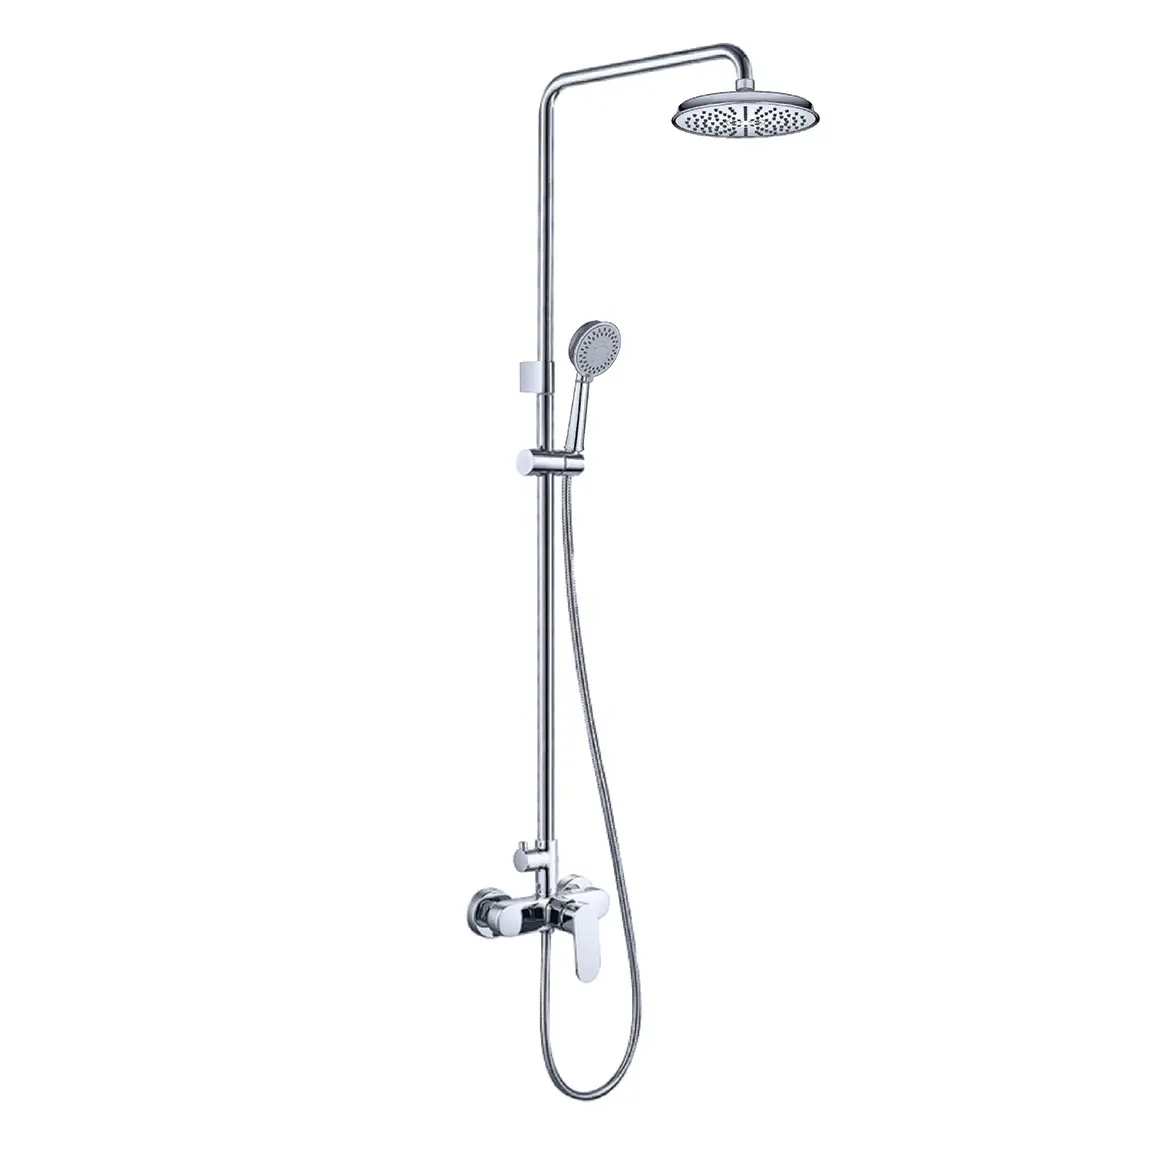 현대 노출 샤워 제어 욕실 벽걸이 형 수도꼭지 목욕 수도꼭지 샤워 헤드 믹서 수도꼭지 시스템